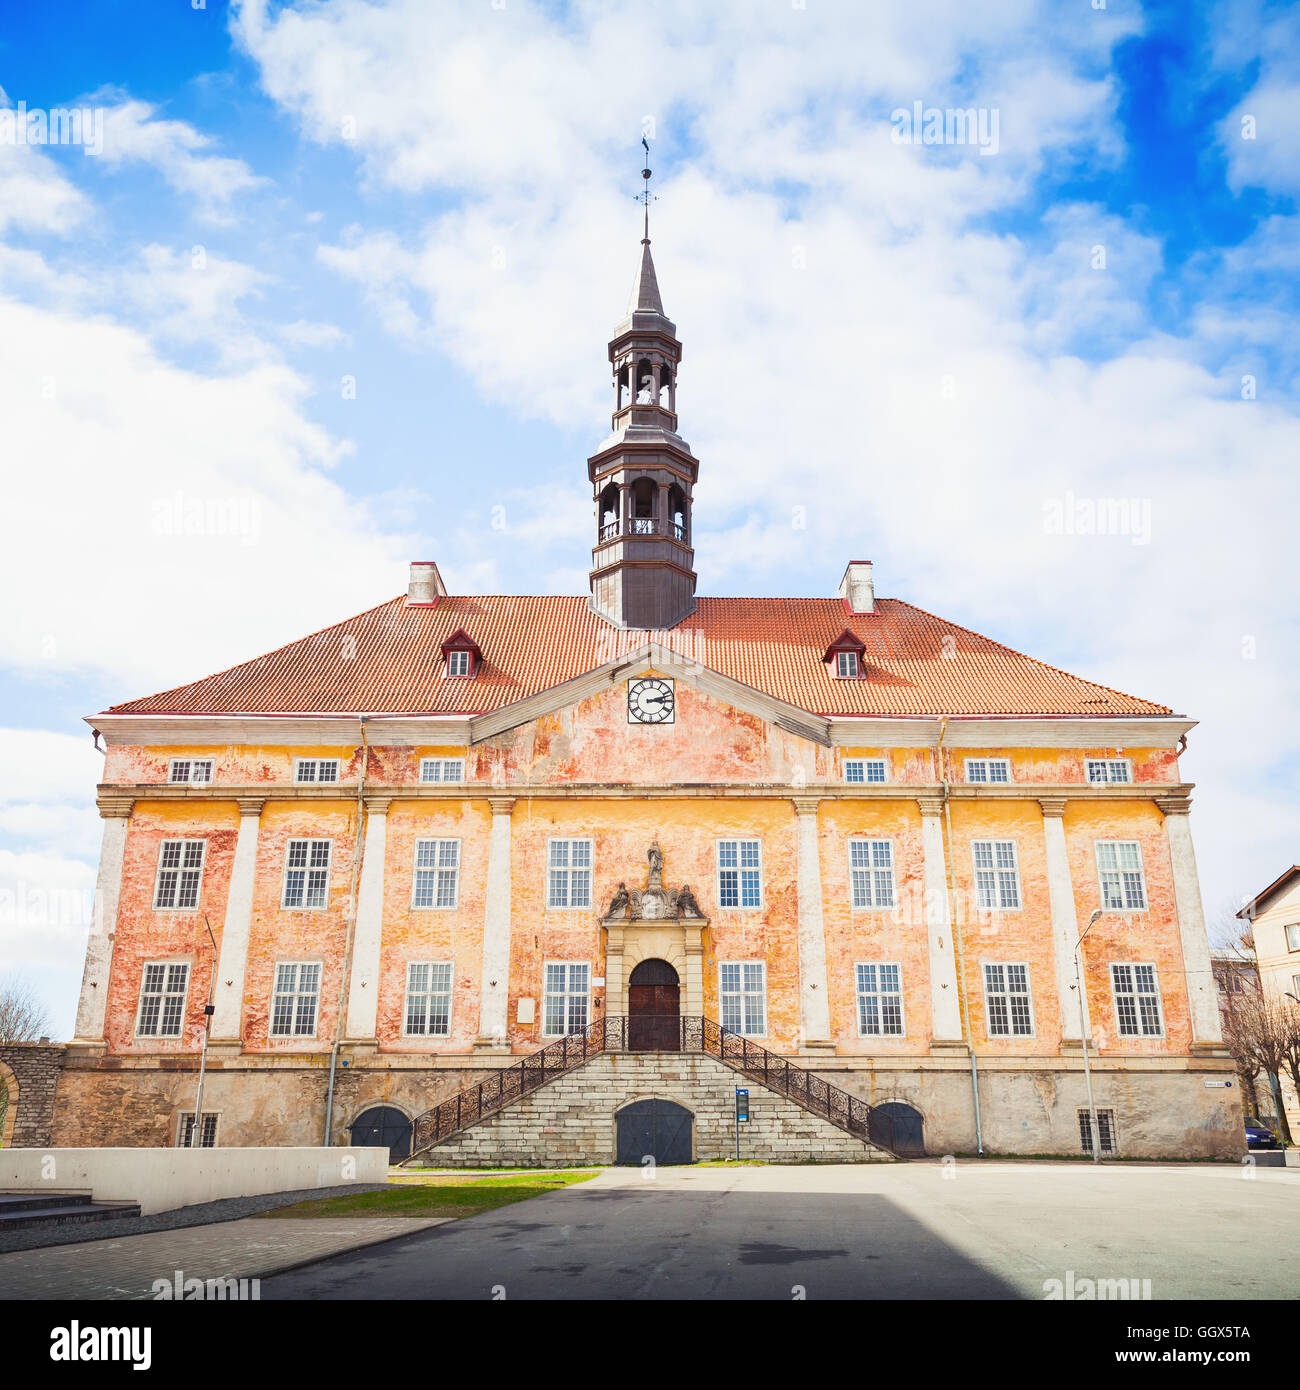 Façade de l'ancien hôtel de ville de Narva, Estonie Banque D'Images